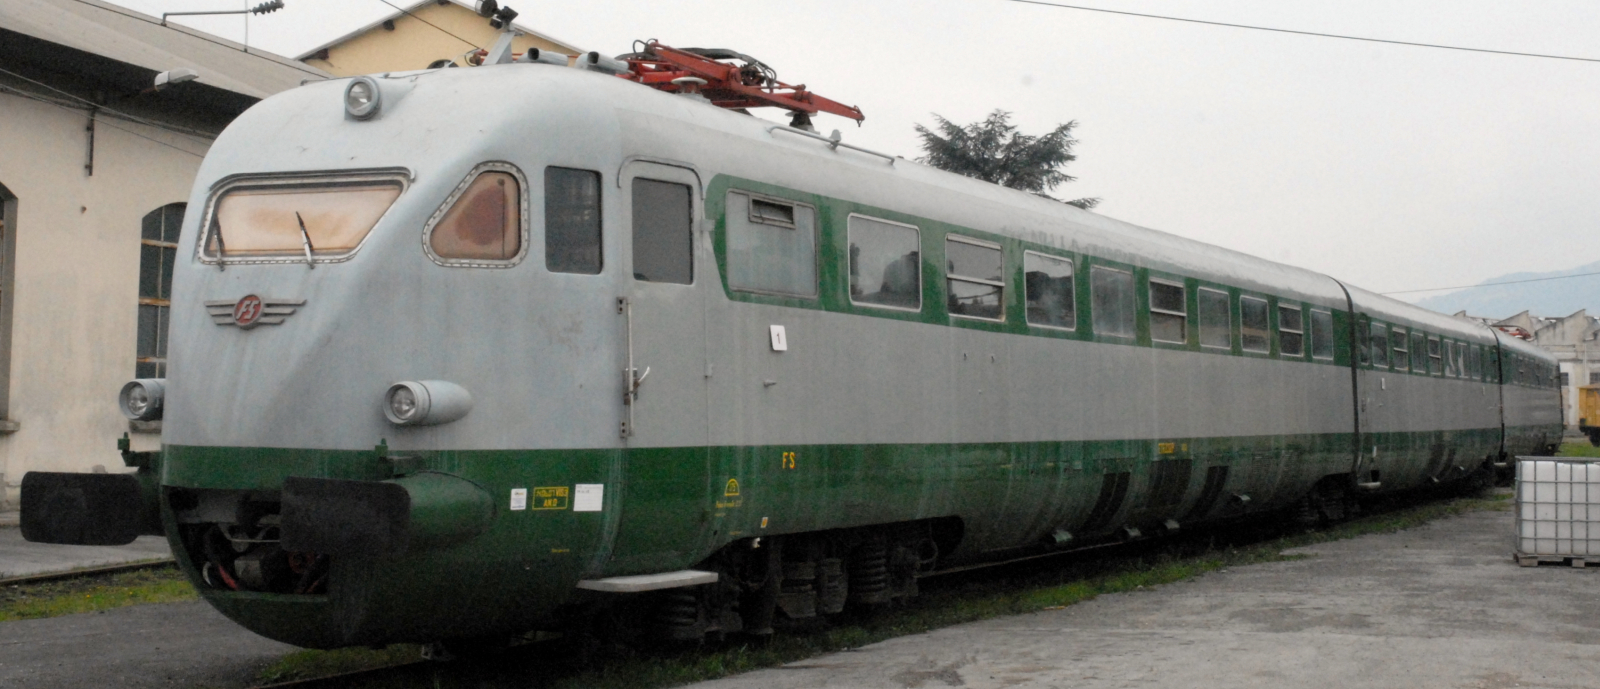 Record train ETR 232 in March 2010 in Pistoia